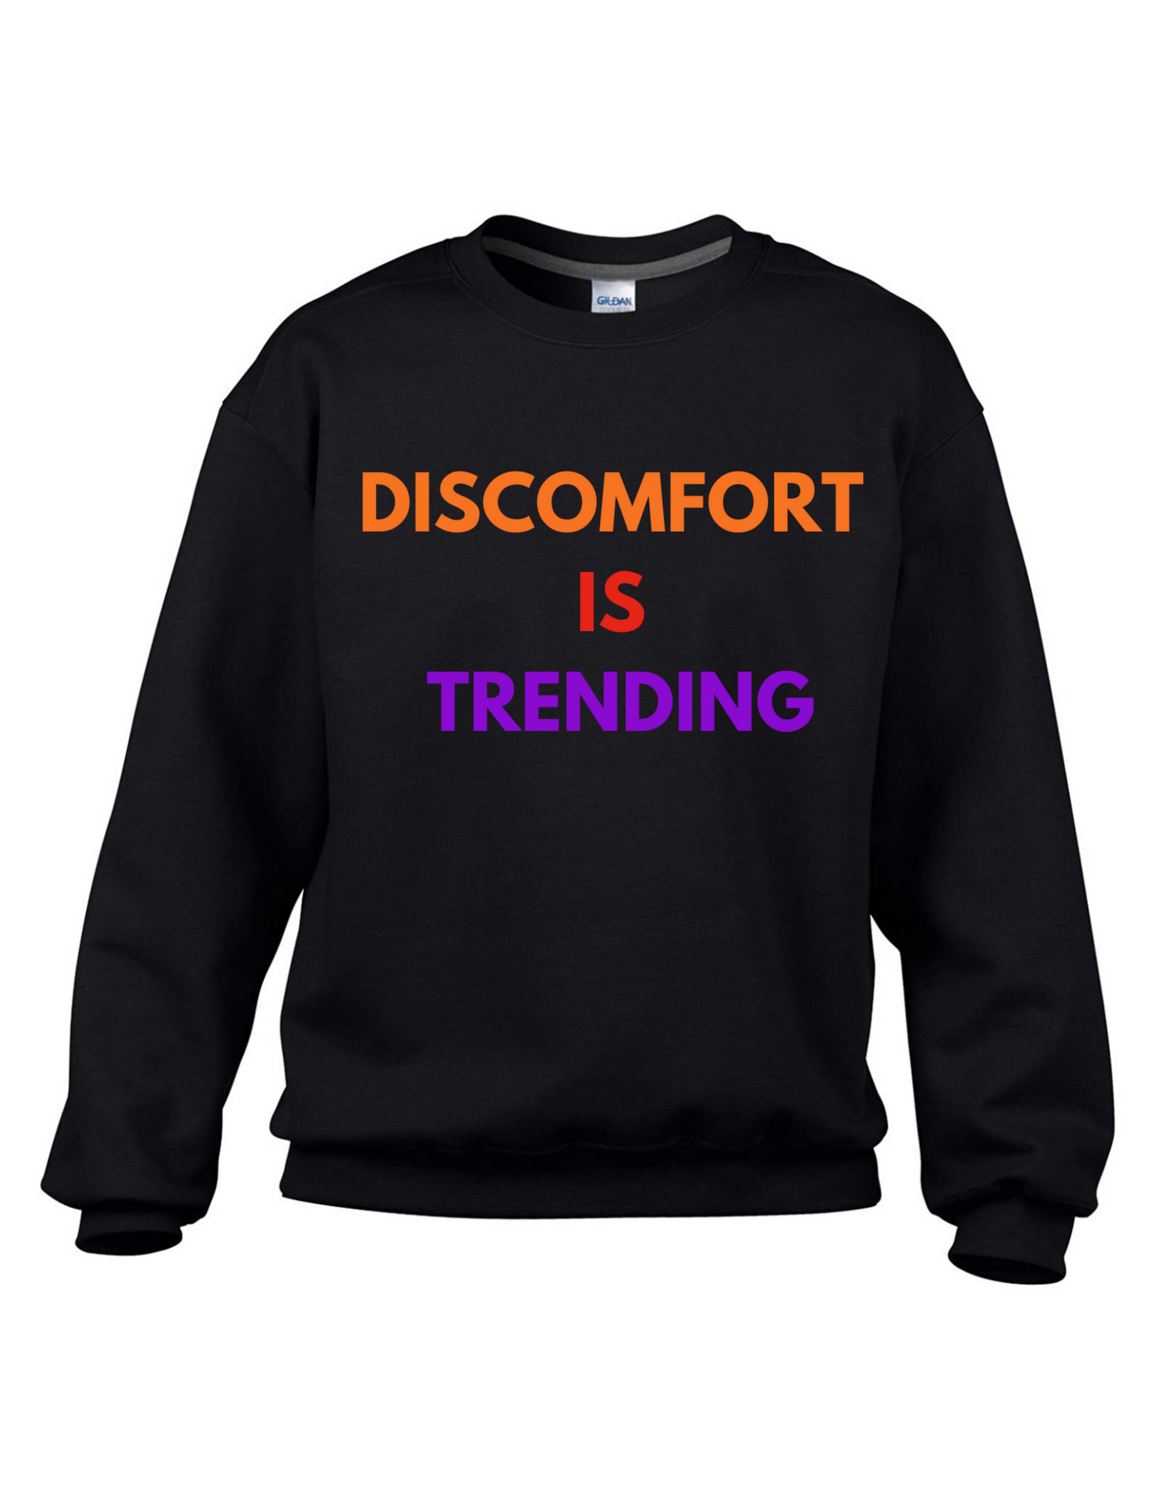 Discomfort Is Trending Crewneck